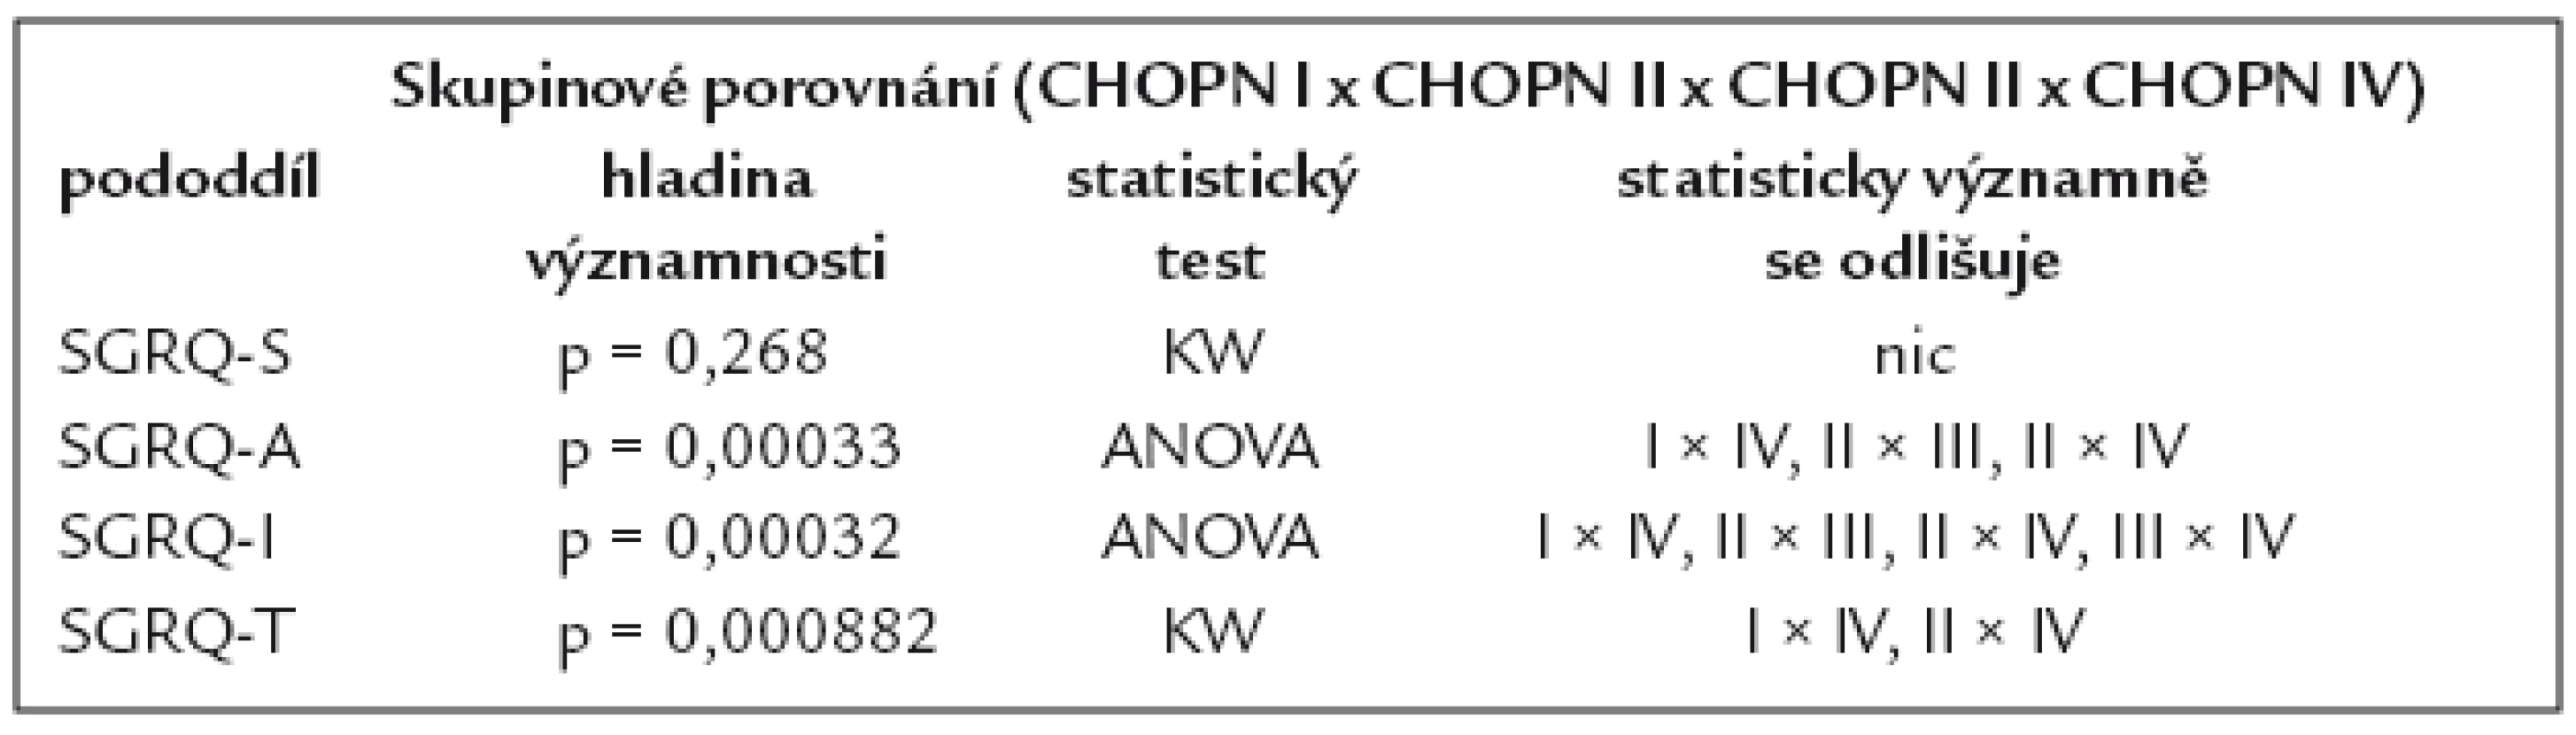 Statistické porovnání SGRQ u jednotlivých stadií CHOPN. I.–IV. podle GOLD 2006.